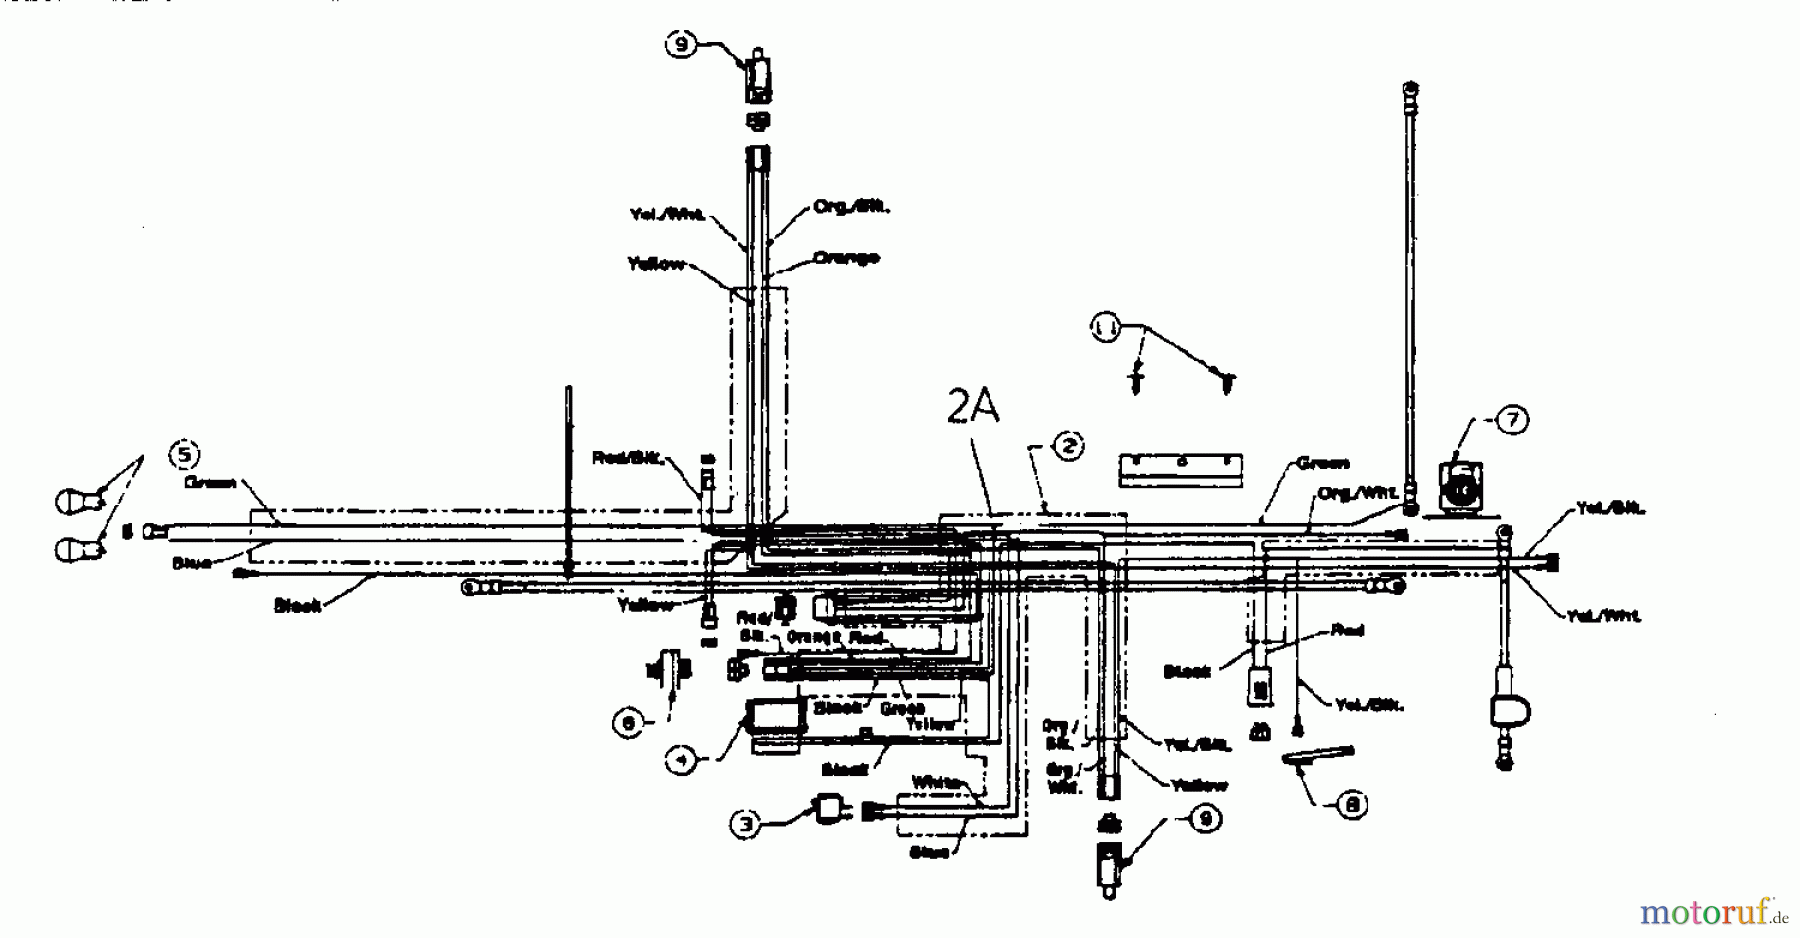  White Tracteurs de pelouse LH 130 13AA696G679  (1999) Plan electrique pour O.H.V.